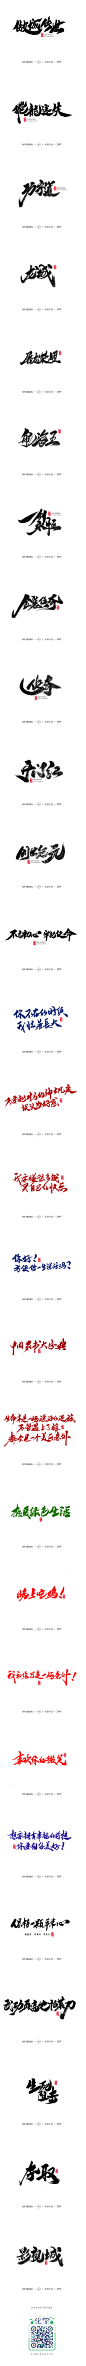 雨泽字造/十二月手写集-字体传奇网-中国首个字体品牌设计师交流网